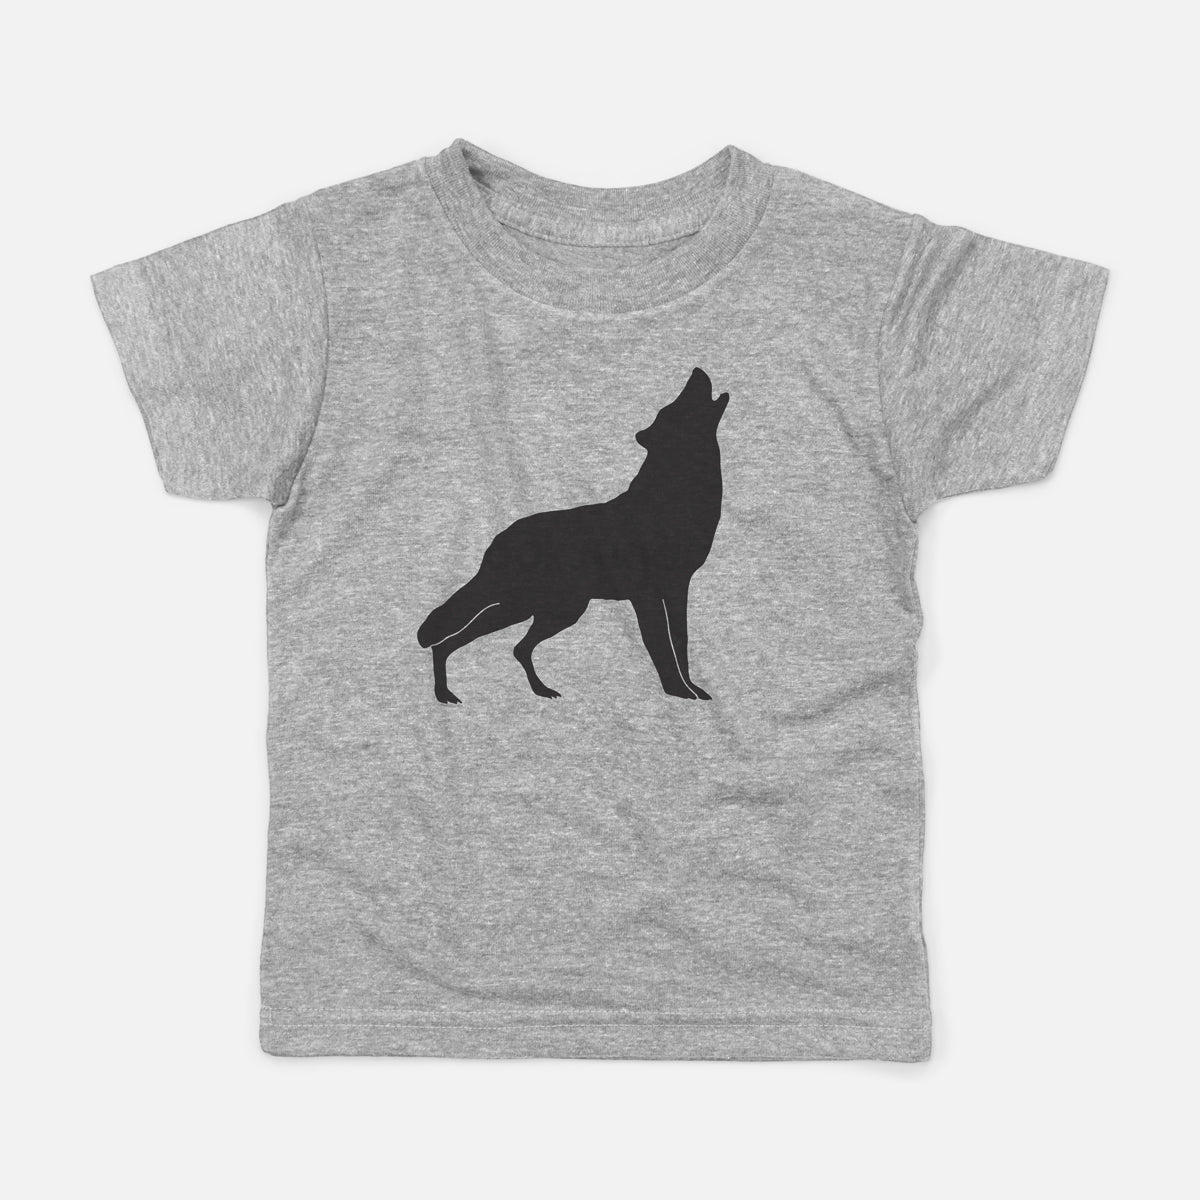 howling wolf t shirt